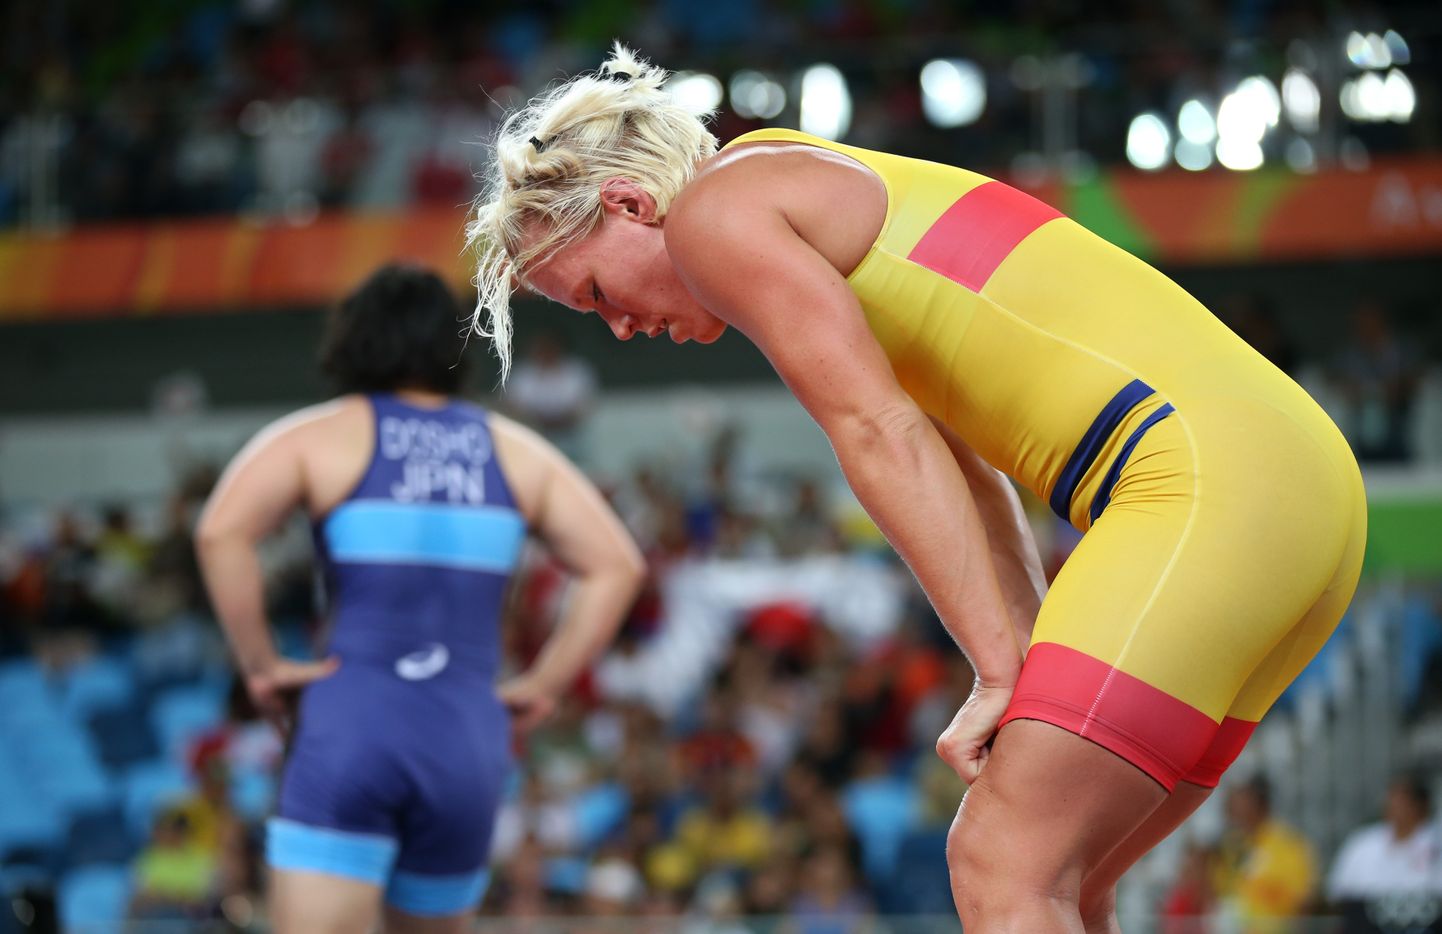 Rootslanna Jenny Fransson teenis 2016. aasta Rio olümpial  pronksmedali.